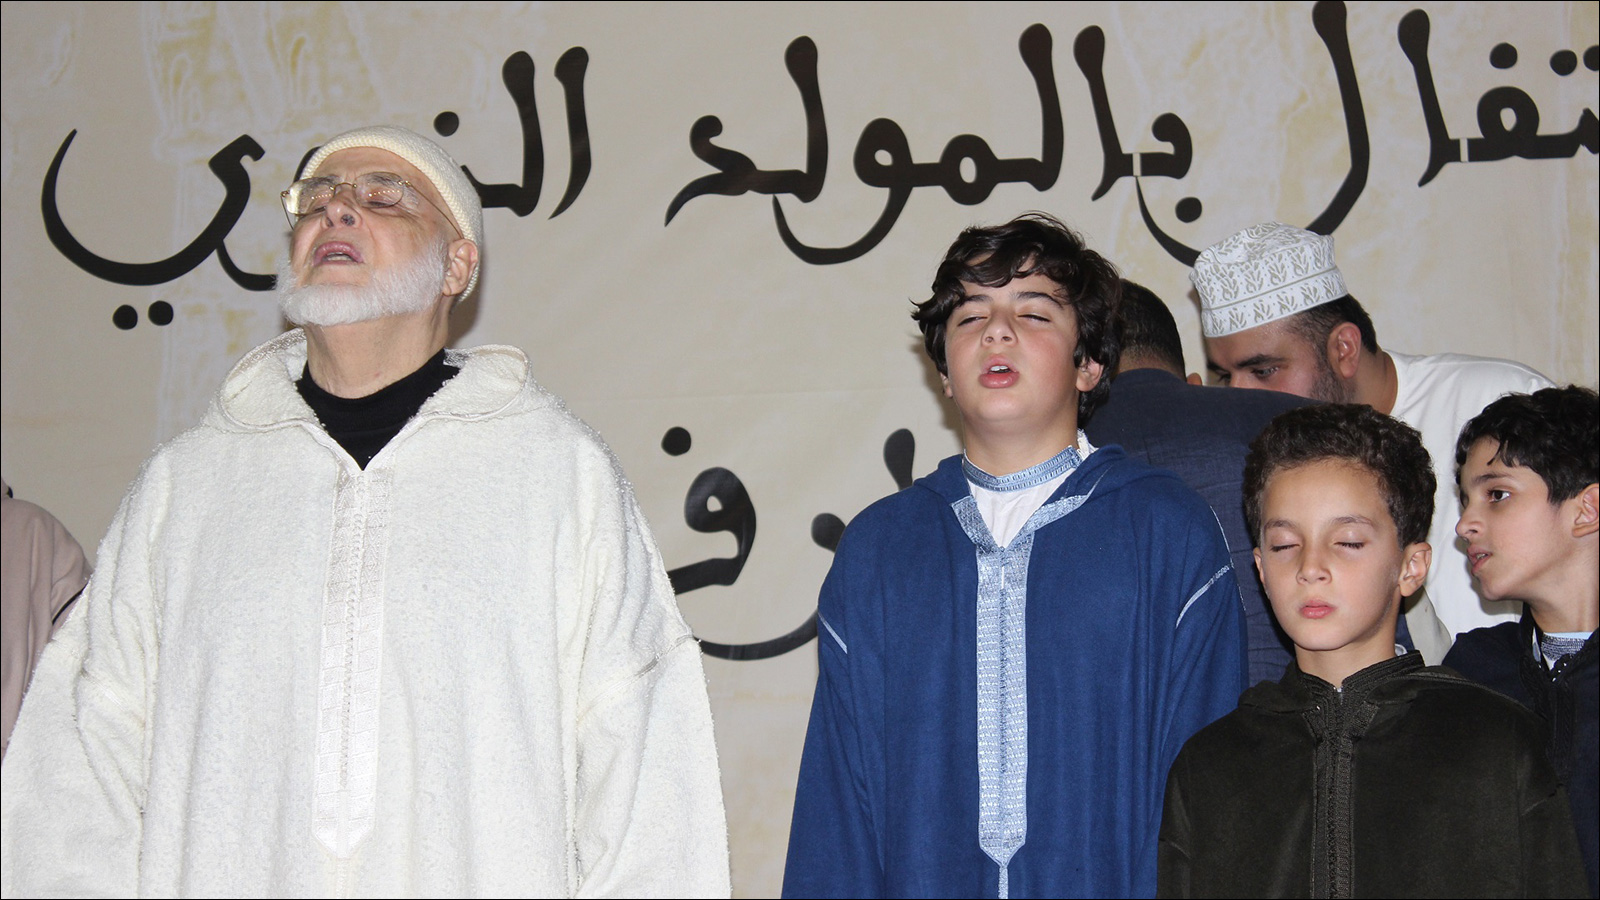 ‪الشيخ جمال الدين بودشيش شيخ الطريقة البودشيشية مع أحفاده في مسجد الزاوية‬ (الجزيرة)